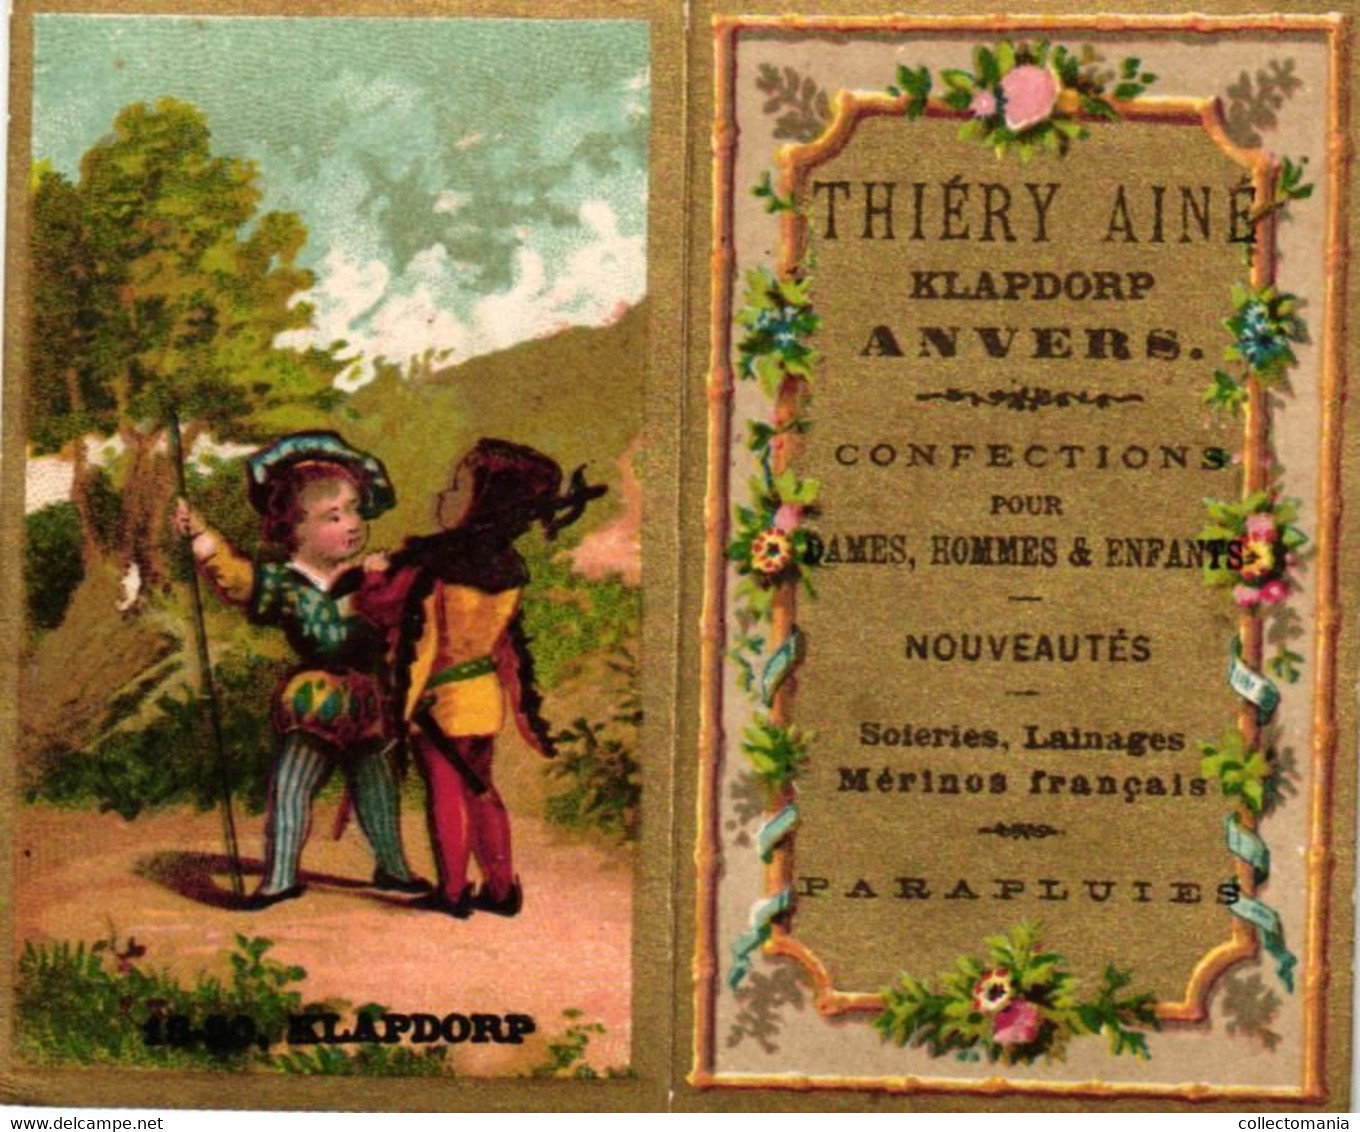 1 Calendrier  1882   Confections Nouveautés  Thiéry Ainé  Anvers Klapdorp - Kleinformat : ...-1900